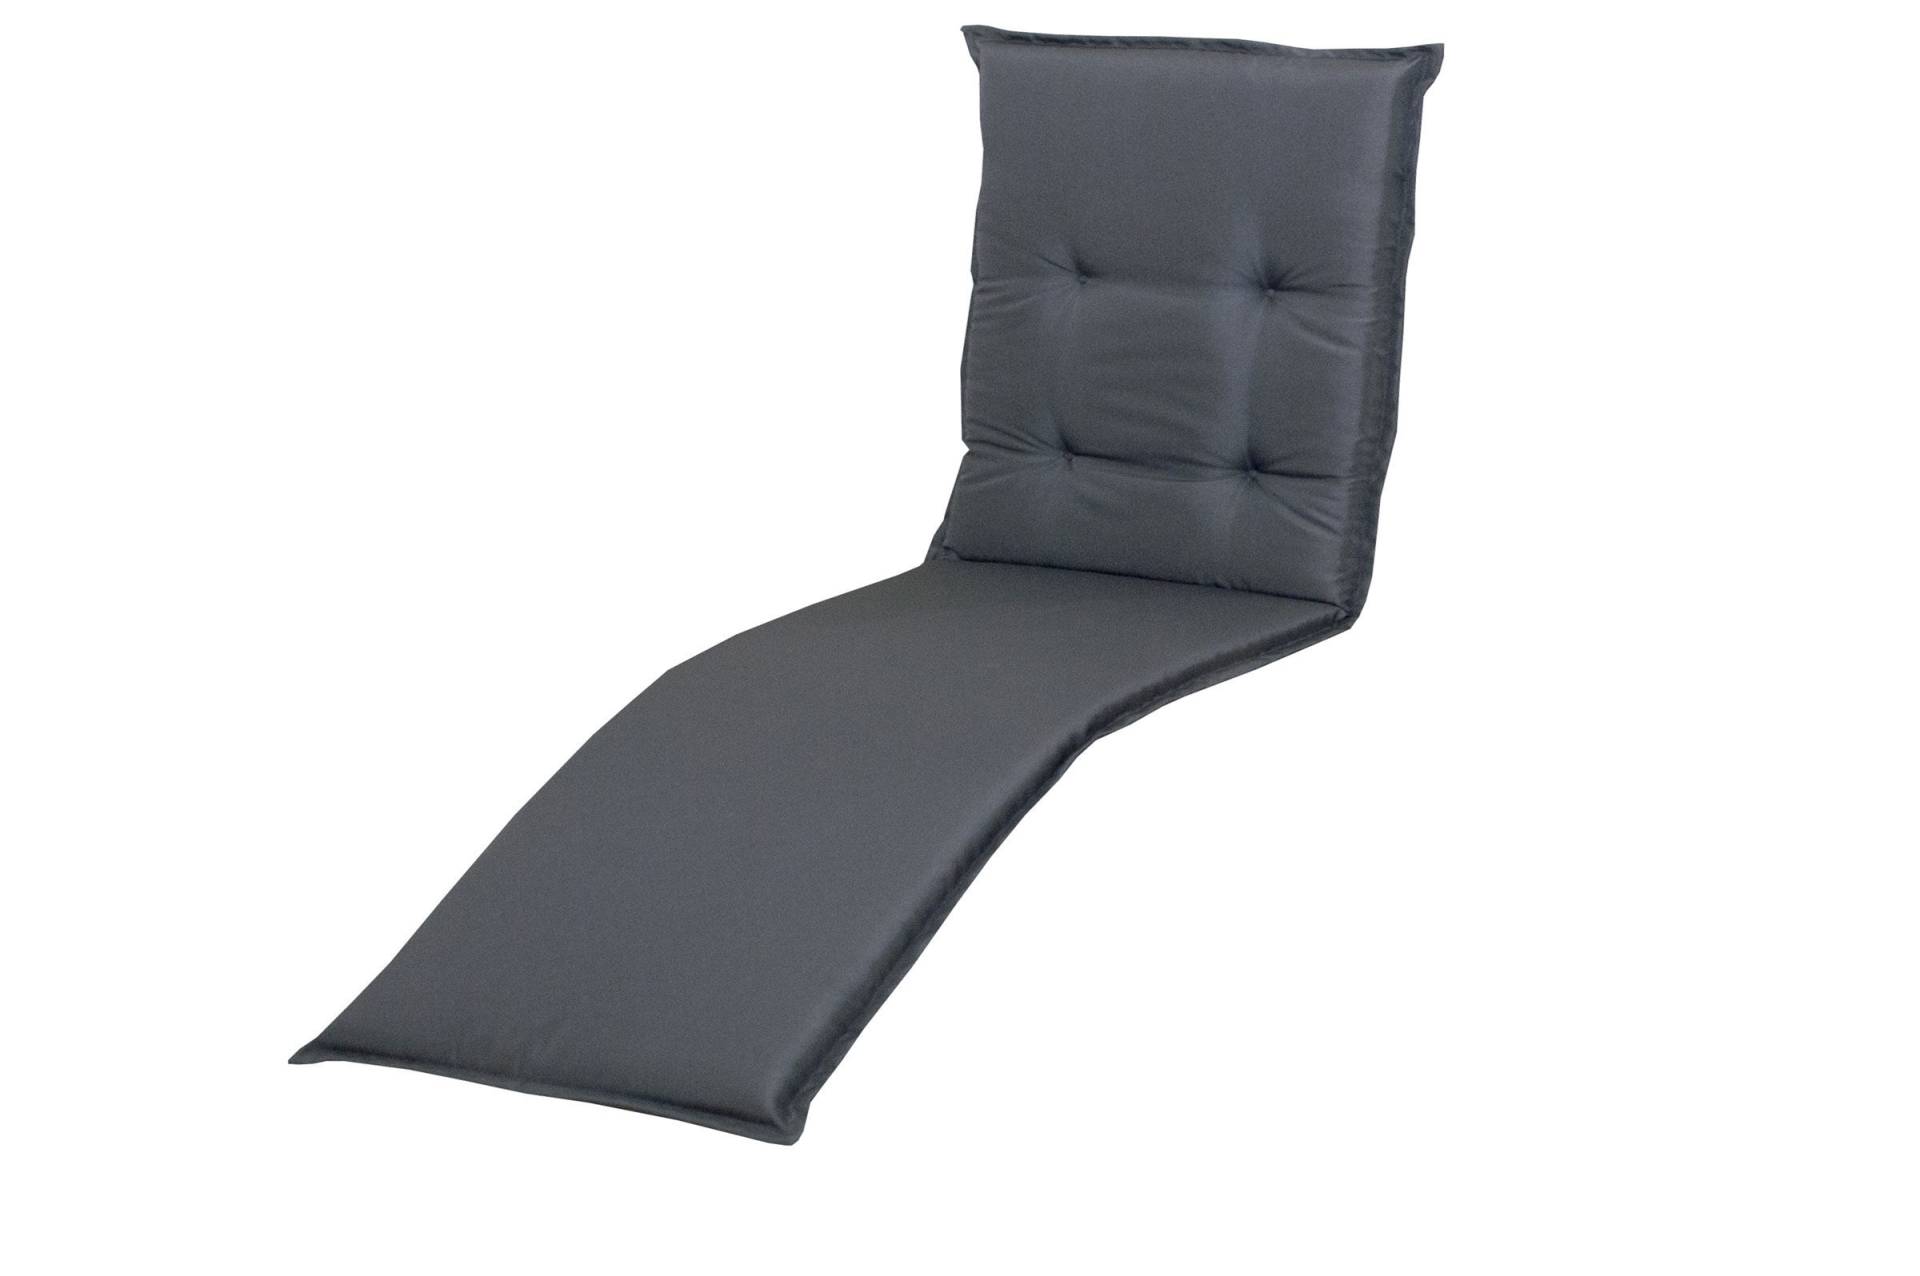 DOPPLER Relax Comfort Relaxsesselauflage, anthrazit, Polyester, 175 x 50 x 7 cm, inklusive Befestigungsbänder von Doppler